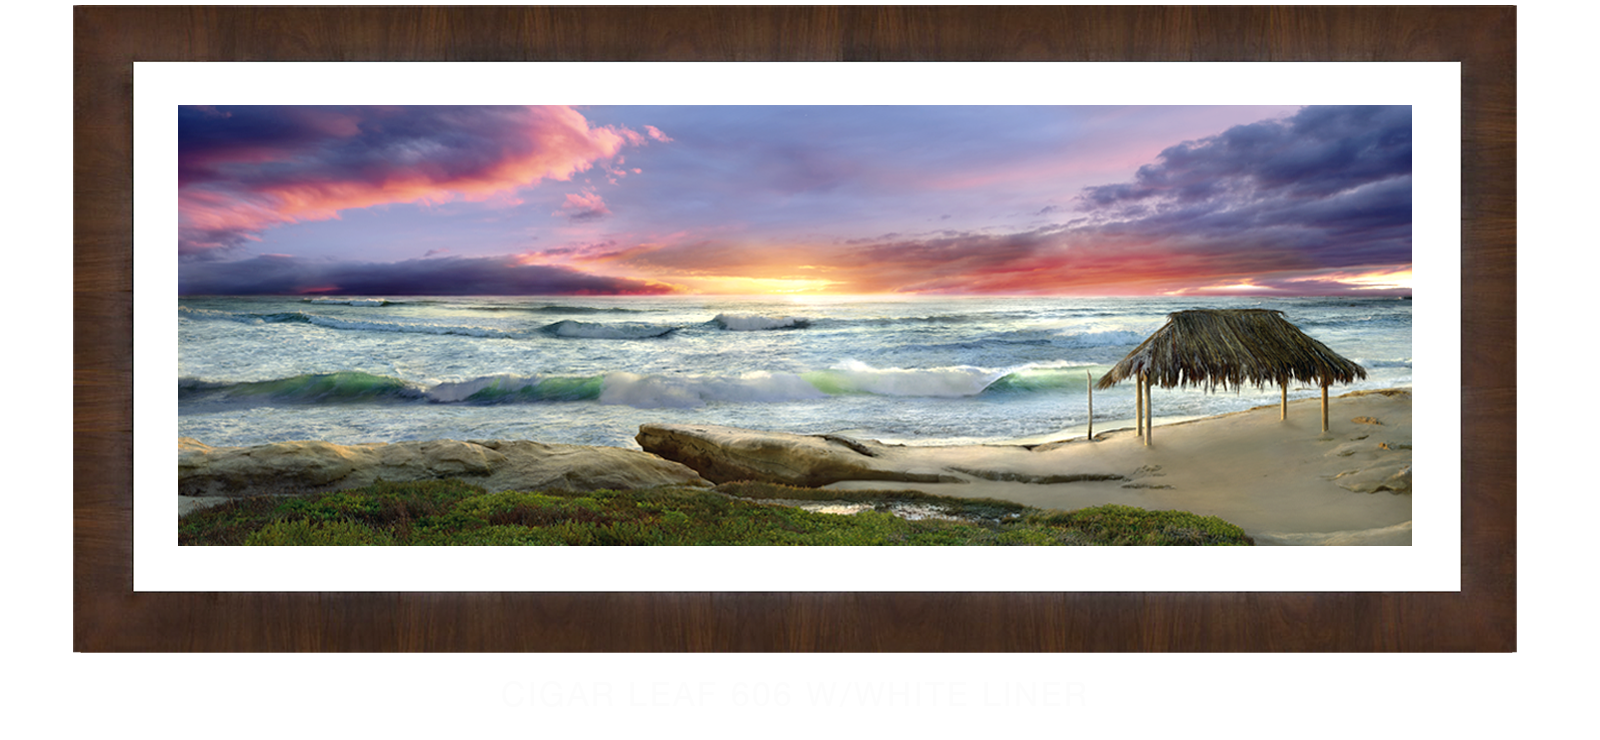 21AWAITANCE Cigar Leaf 606 w_Wht Liner T